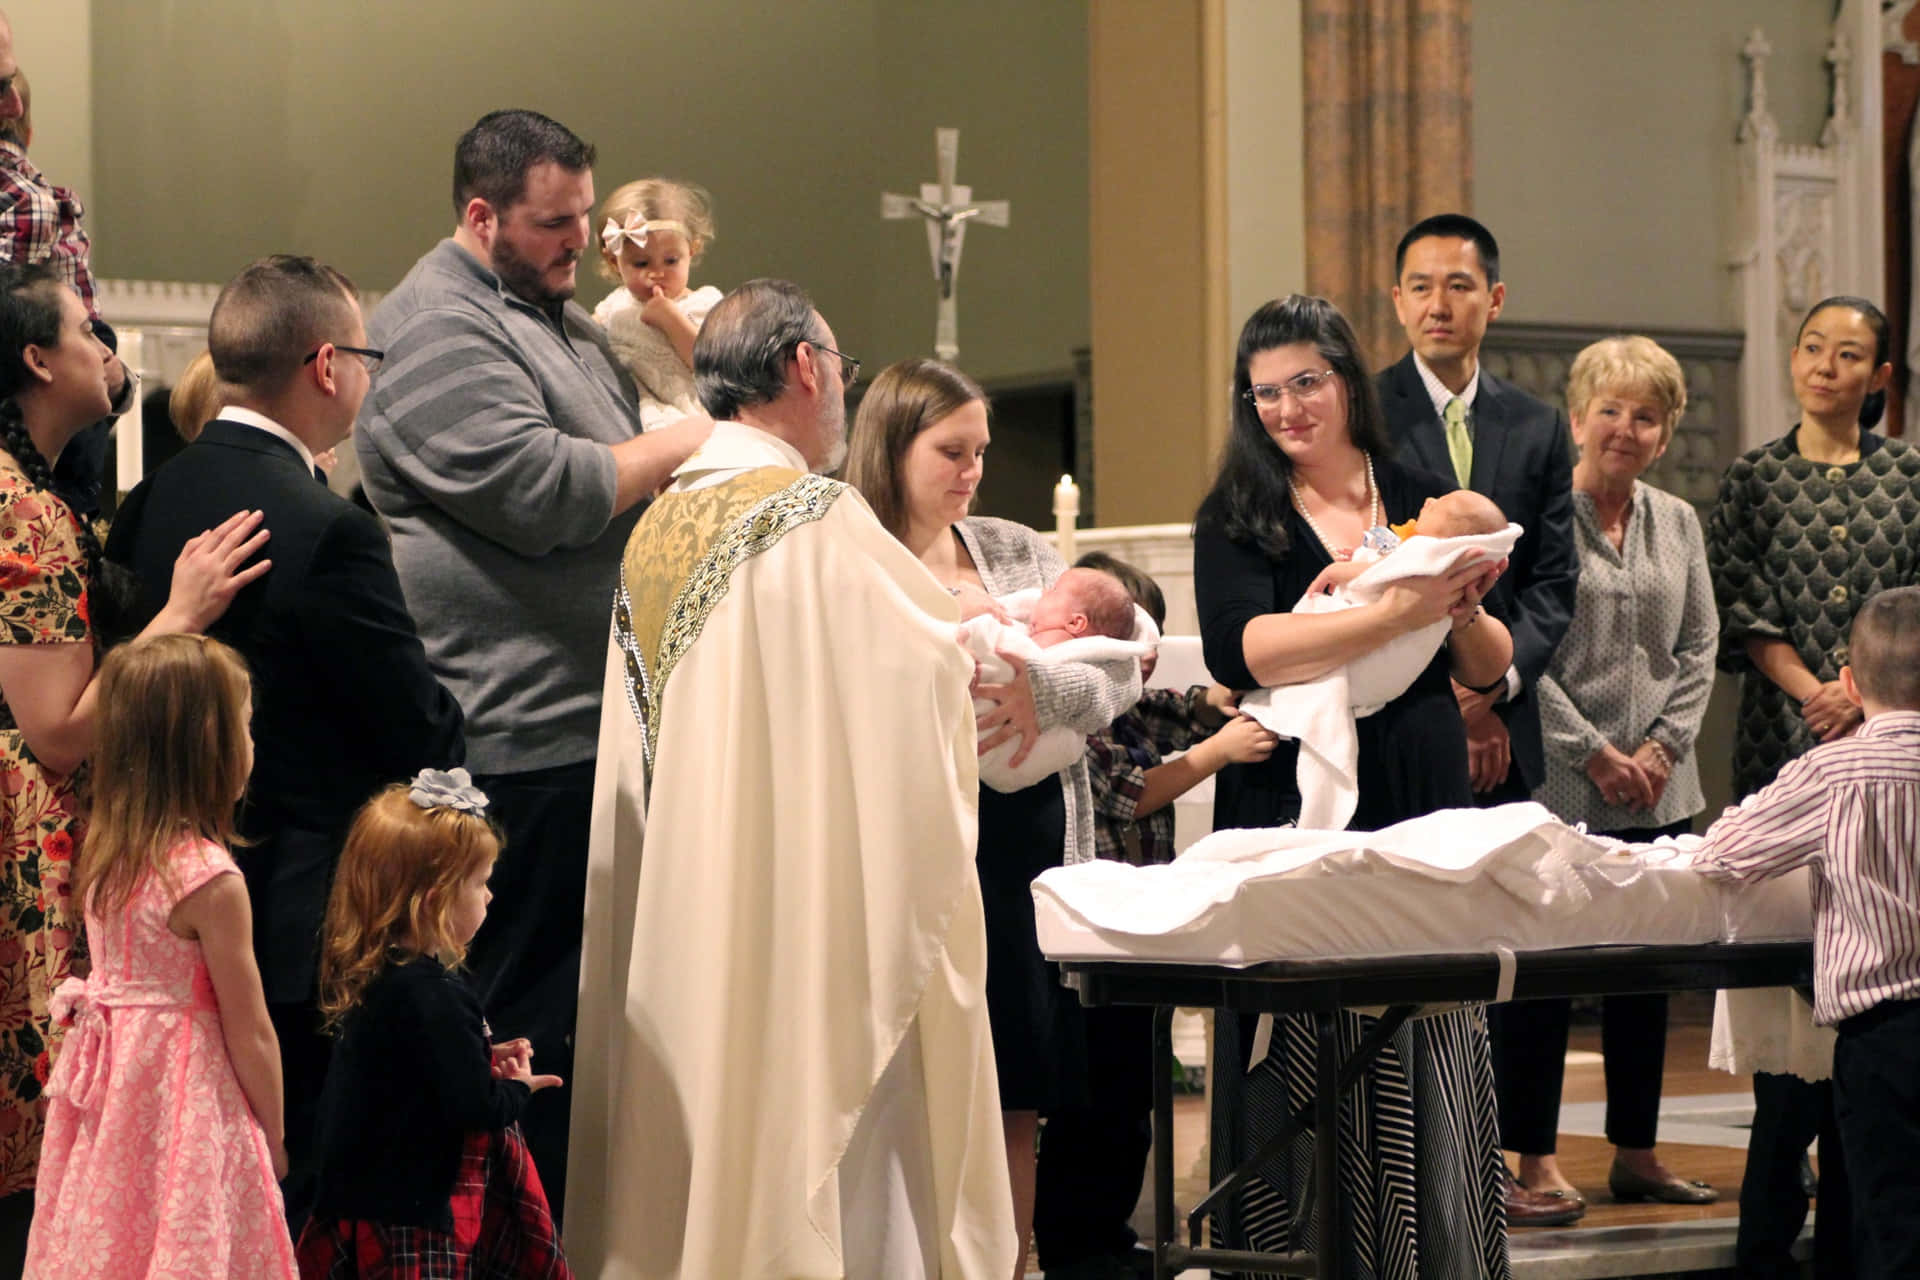 Celebrating Baptism